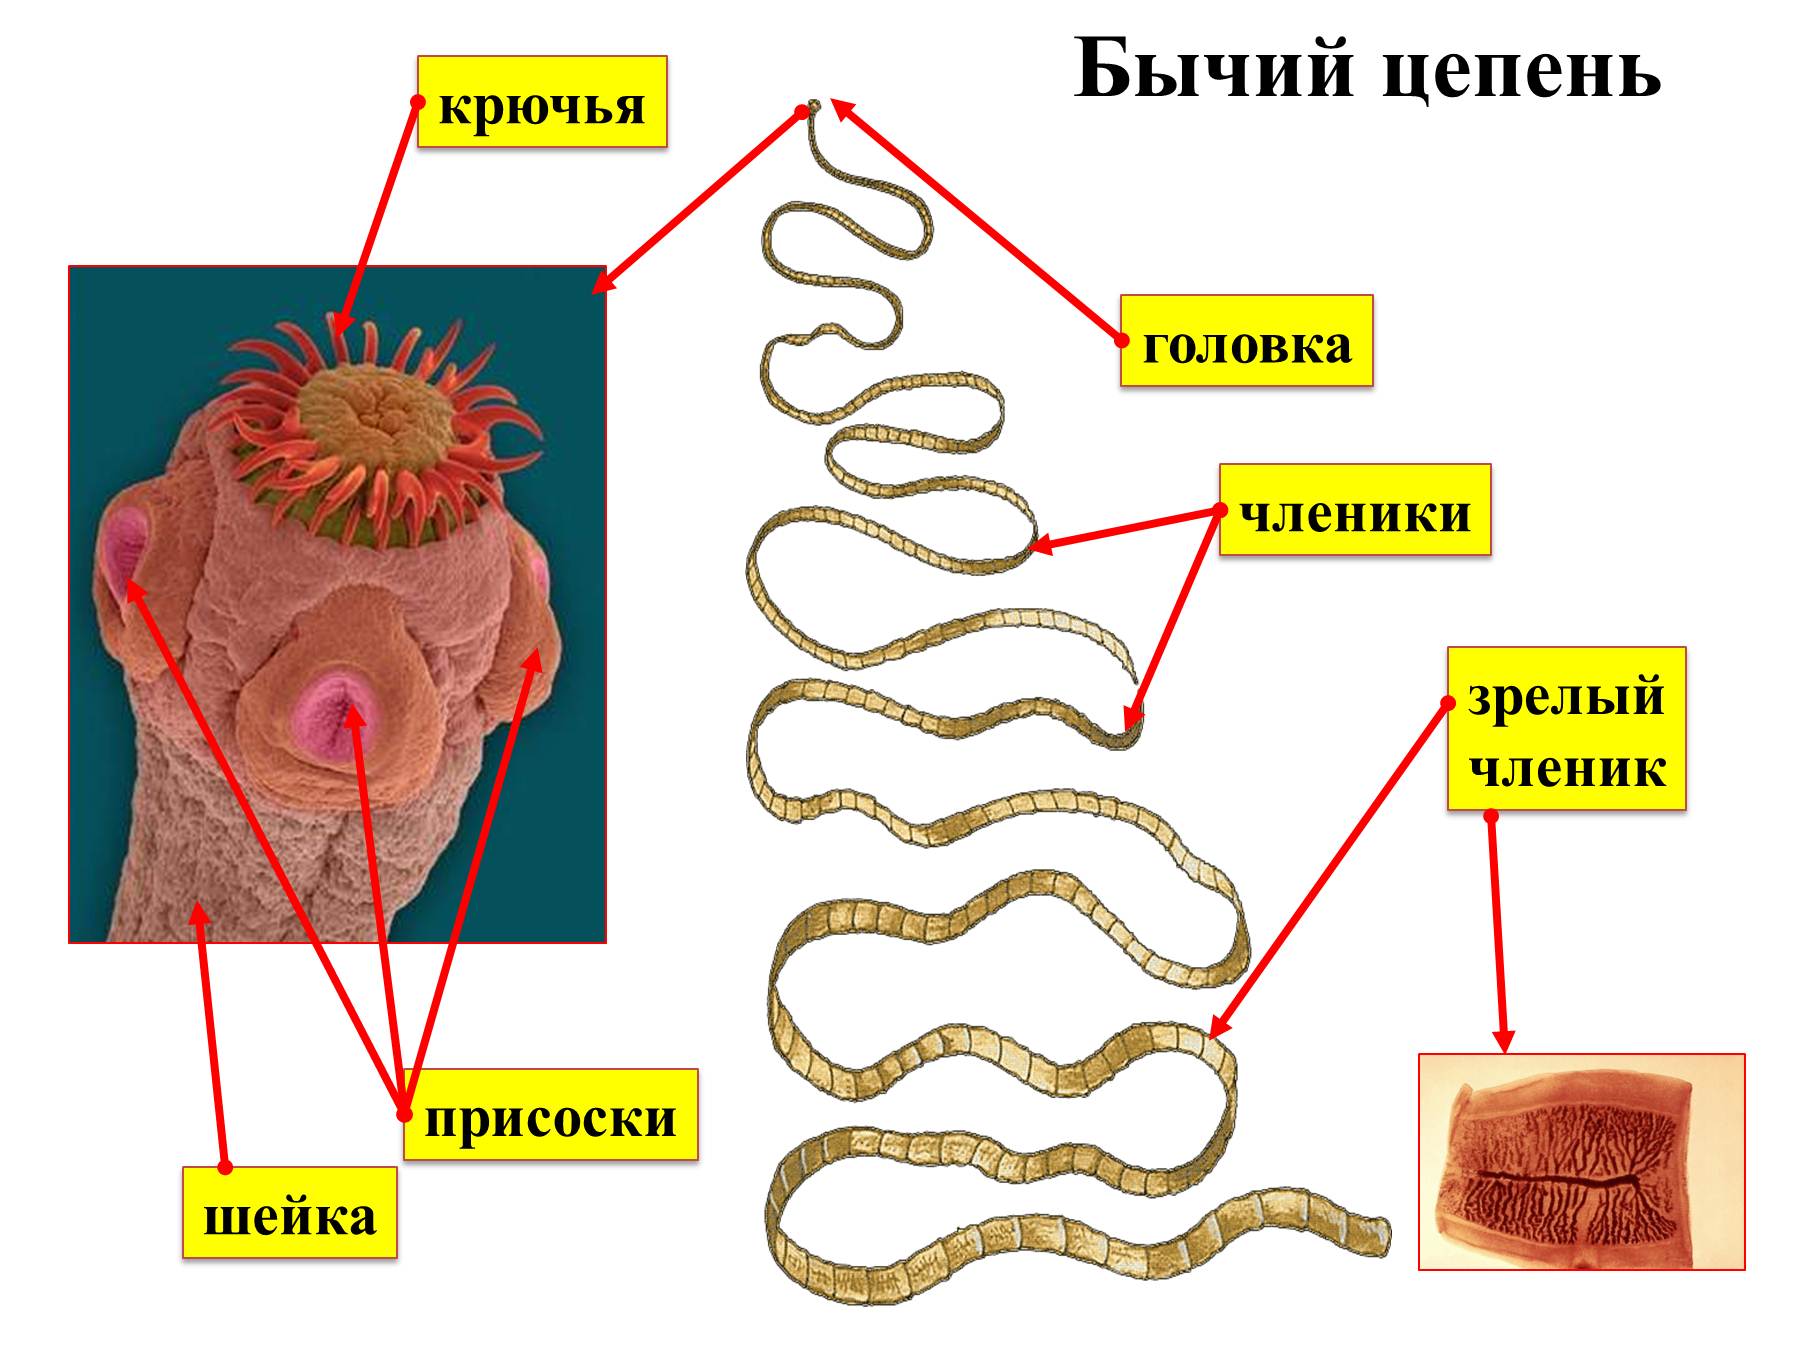 Ленточные и плоские черви. Taeniarhynchus saginatus бычий цепень. Паразитические ленточные черви строение. Строение ленточных червей паразитов. Паразитические черви гельминты строение.